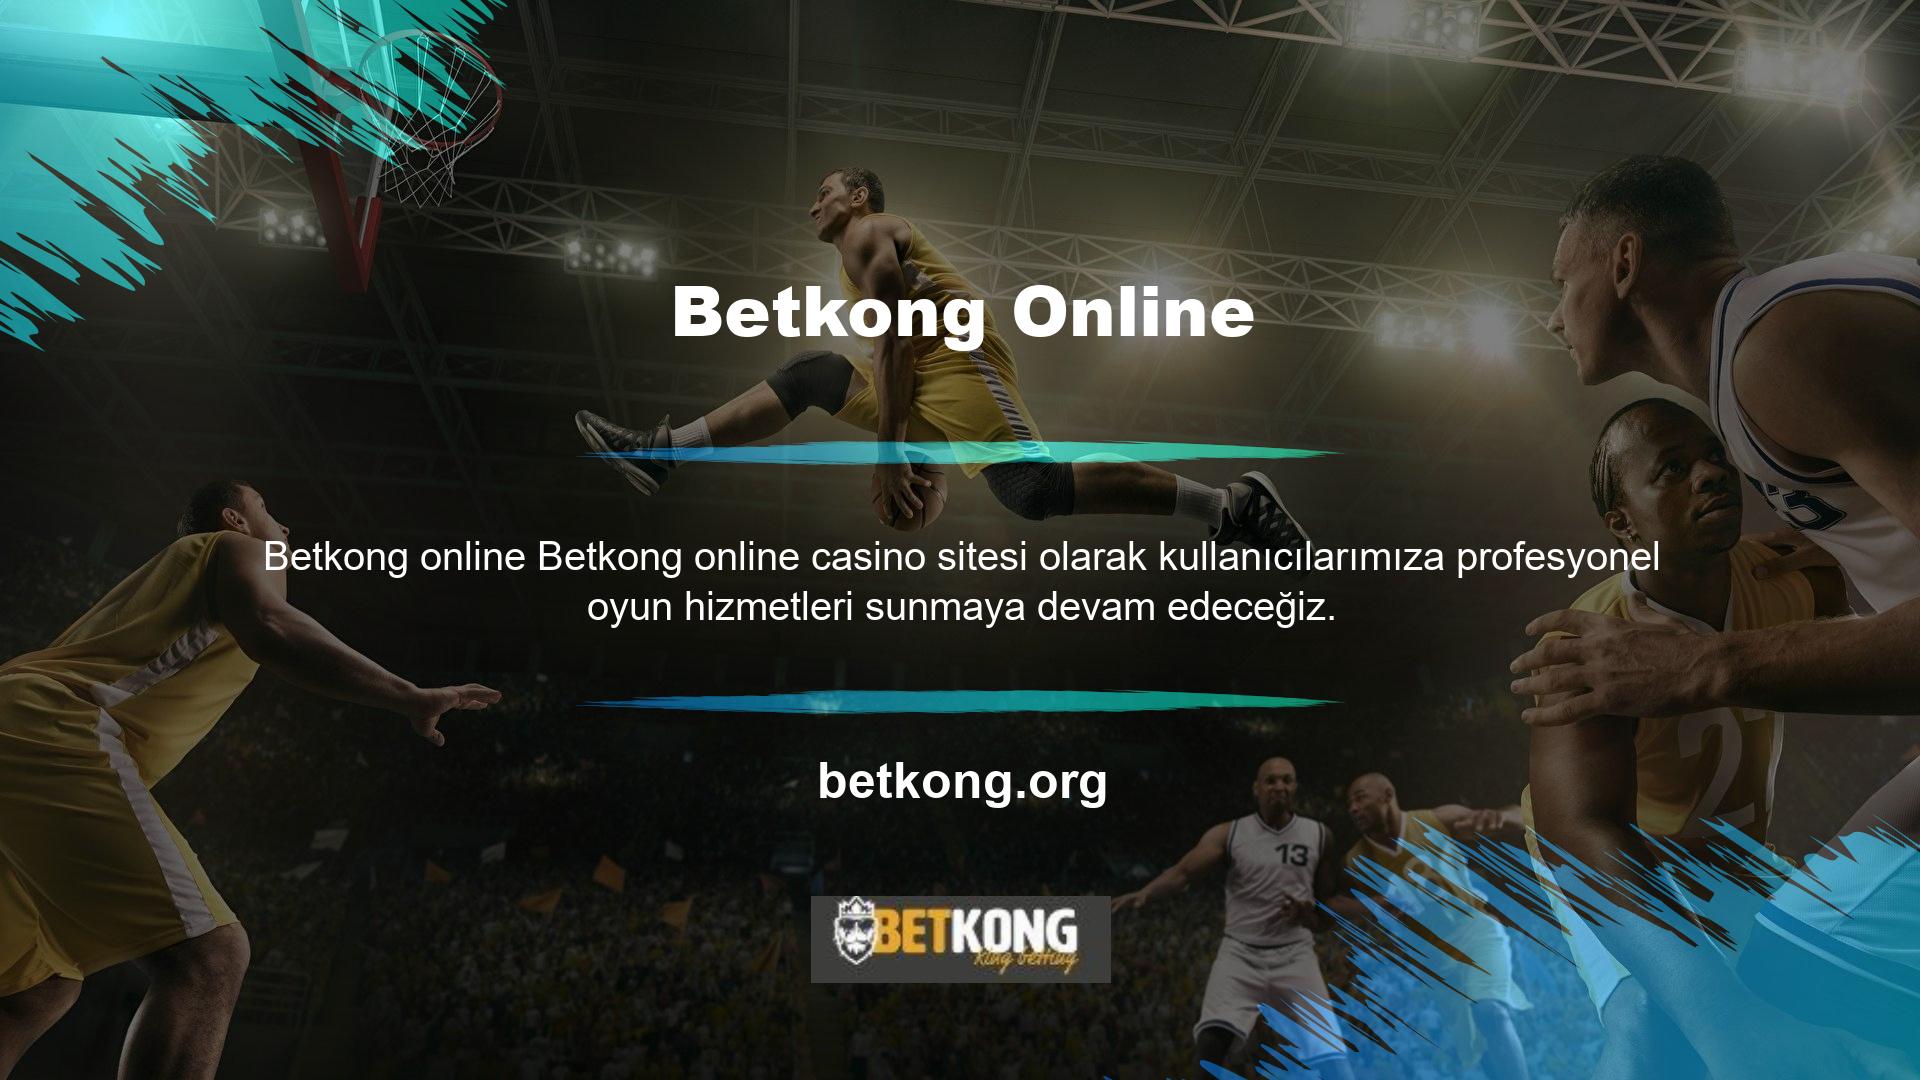 Betkong online sitemize daha önce kaydedilen kullanıcı hesapları ve diğer bilgiler değişmeden kalacaktır